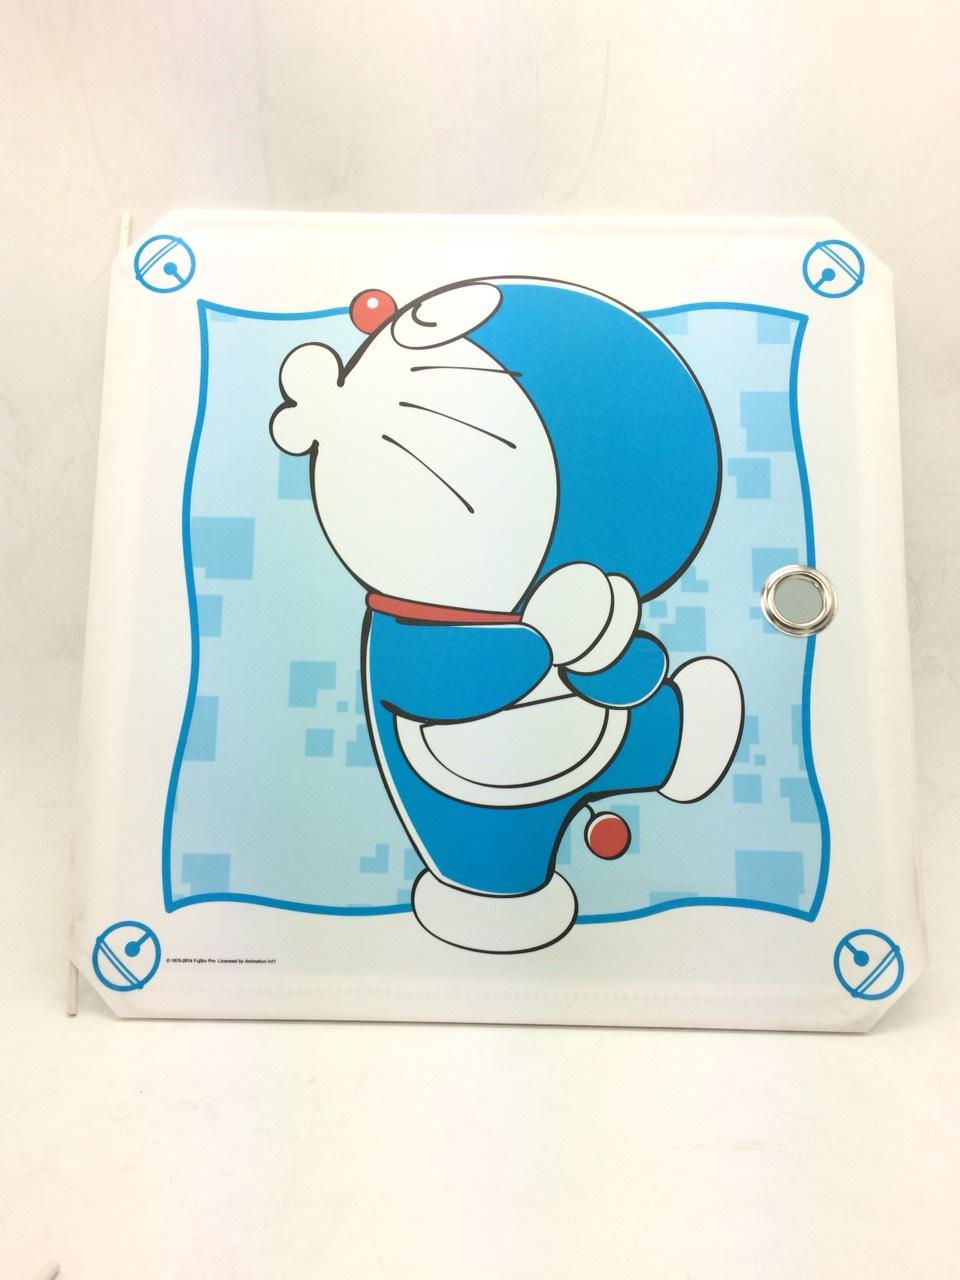 Nếu bạn đang tìm cách để tự làm một chiếc tủ Doraemon độc đáo, hãy xem hình ảnh DIY Cabinet Doraemon này để được khám phá những bí mật đặc biệt của nhân vật Doraemon.